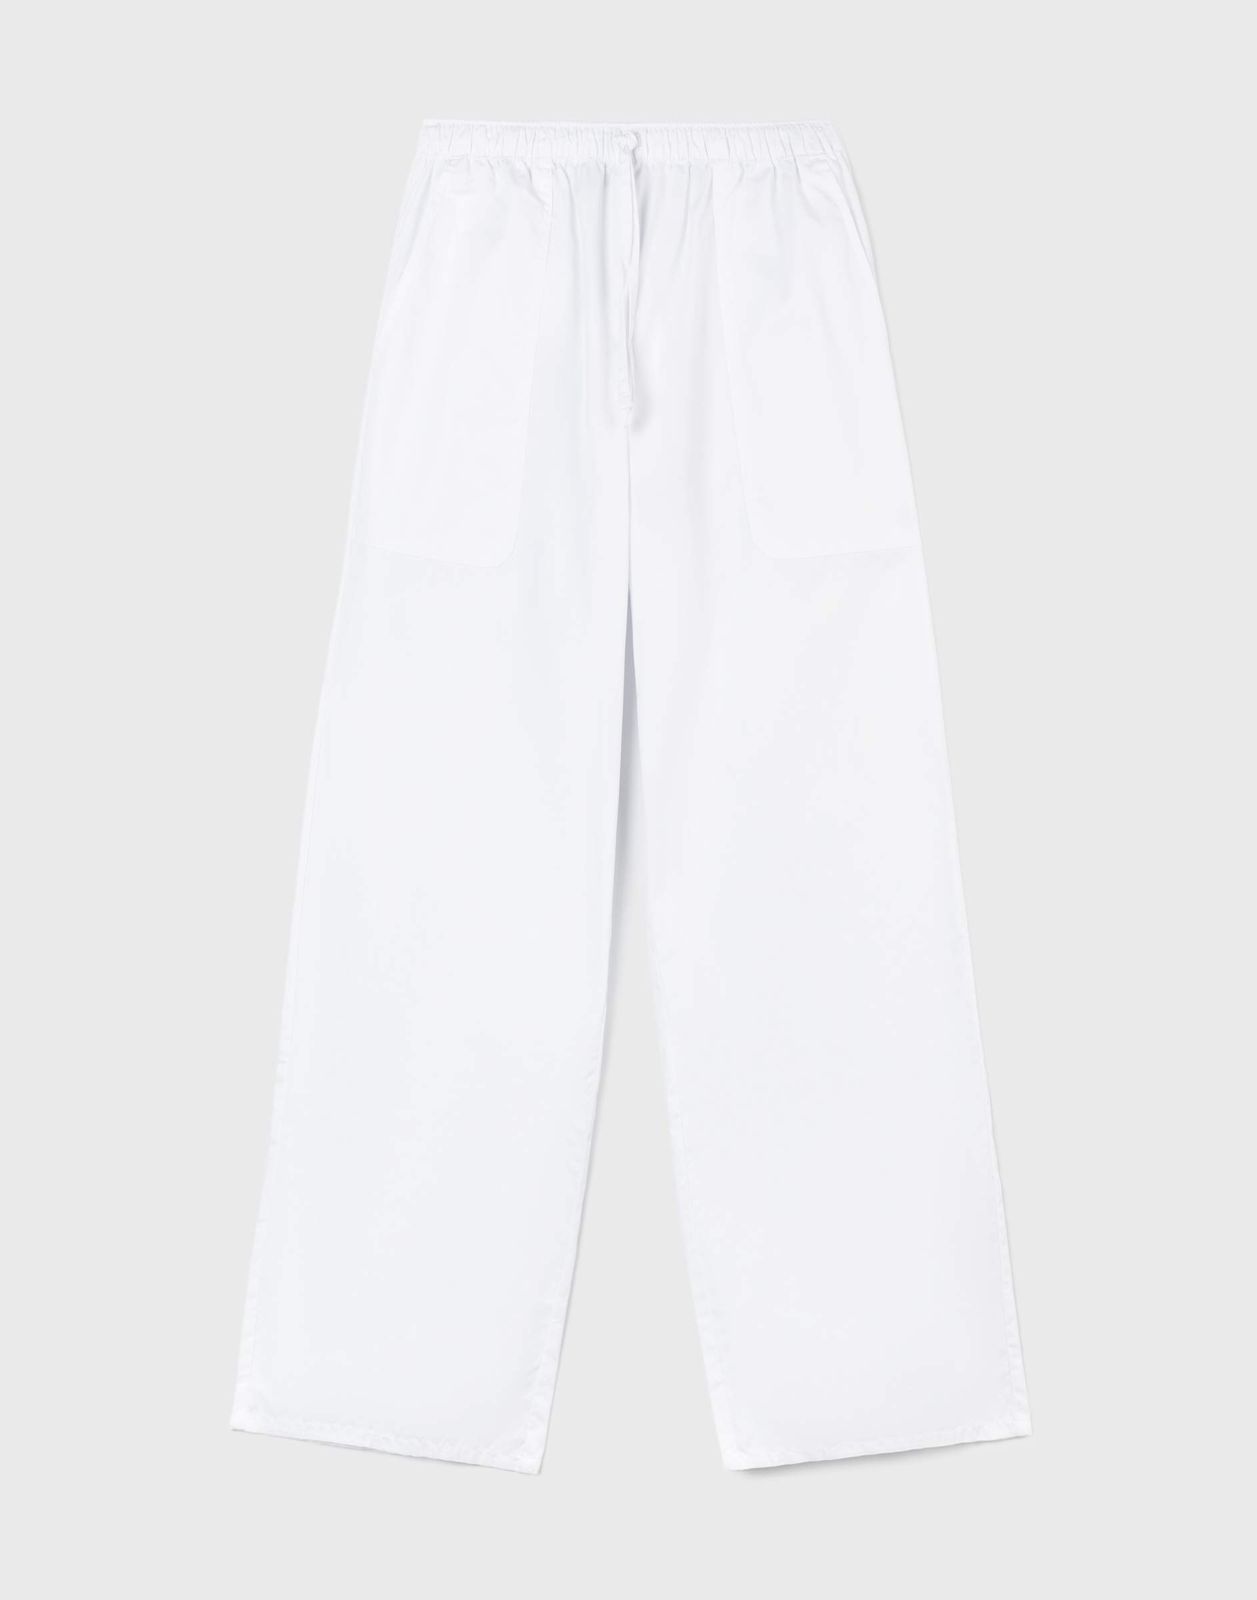 Брюки женские Gloria Jeans GPT009565 белый S/170